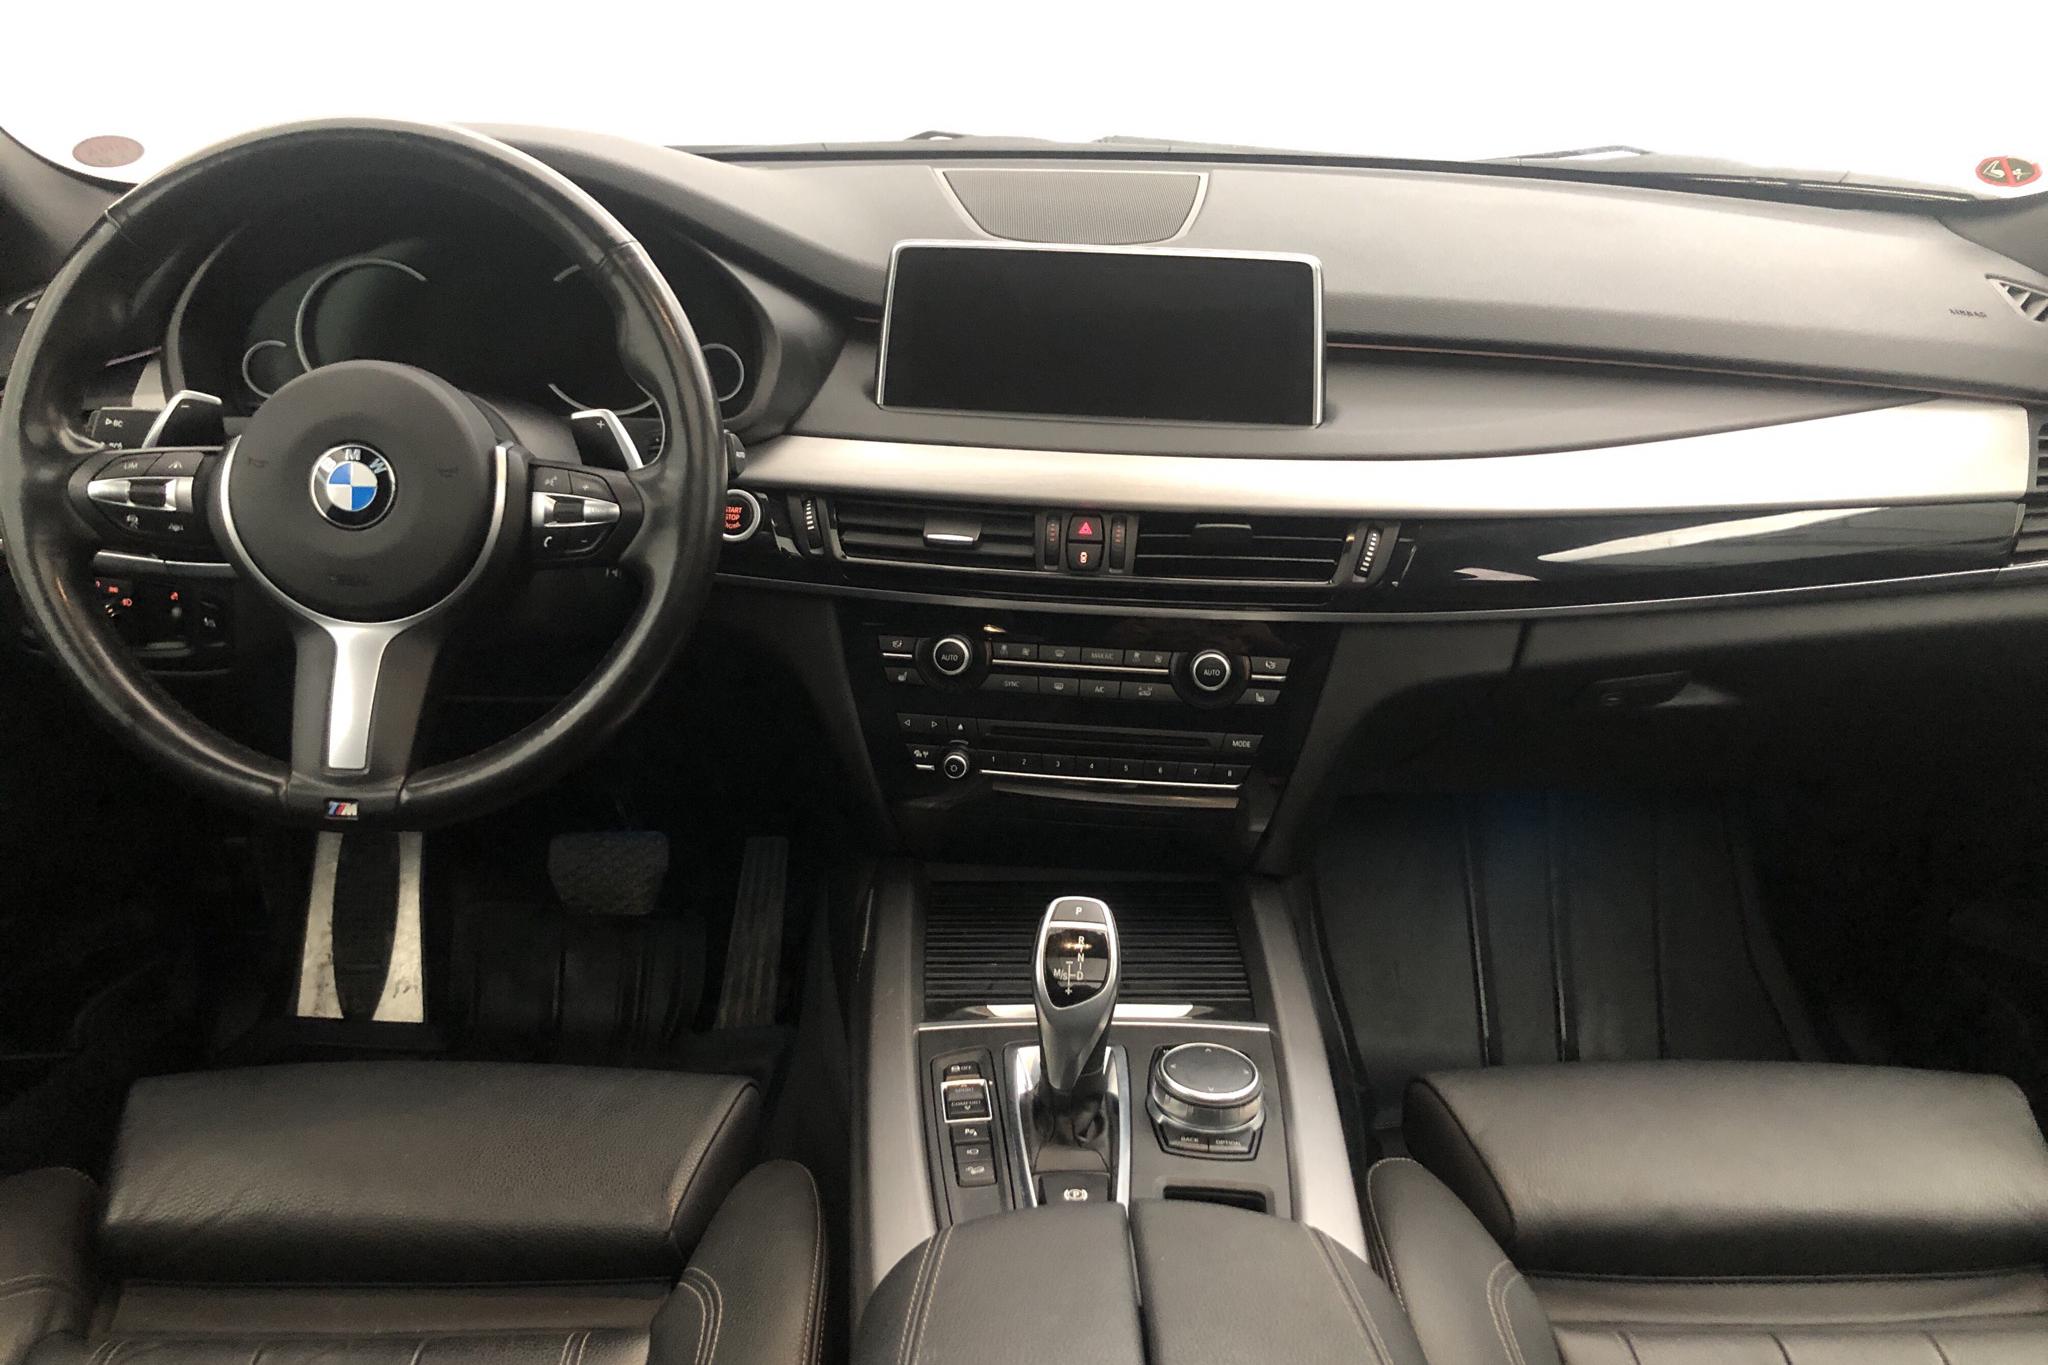 BMW X5 xDrive40d, F15 (313hk) - 8 771 mil - Automat - grå - 2017